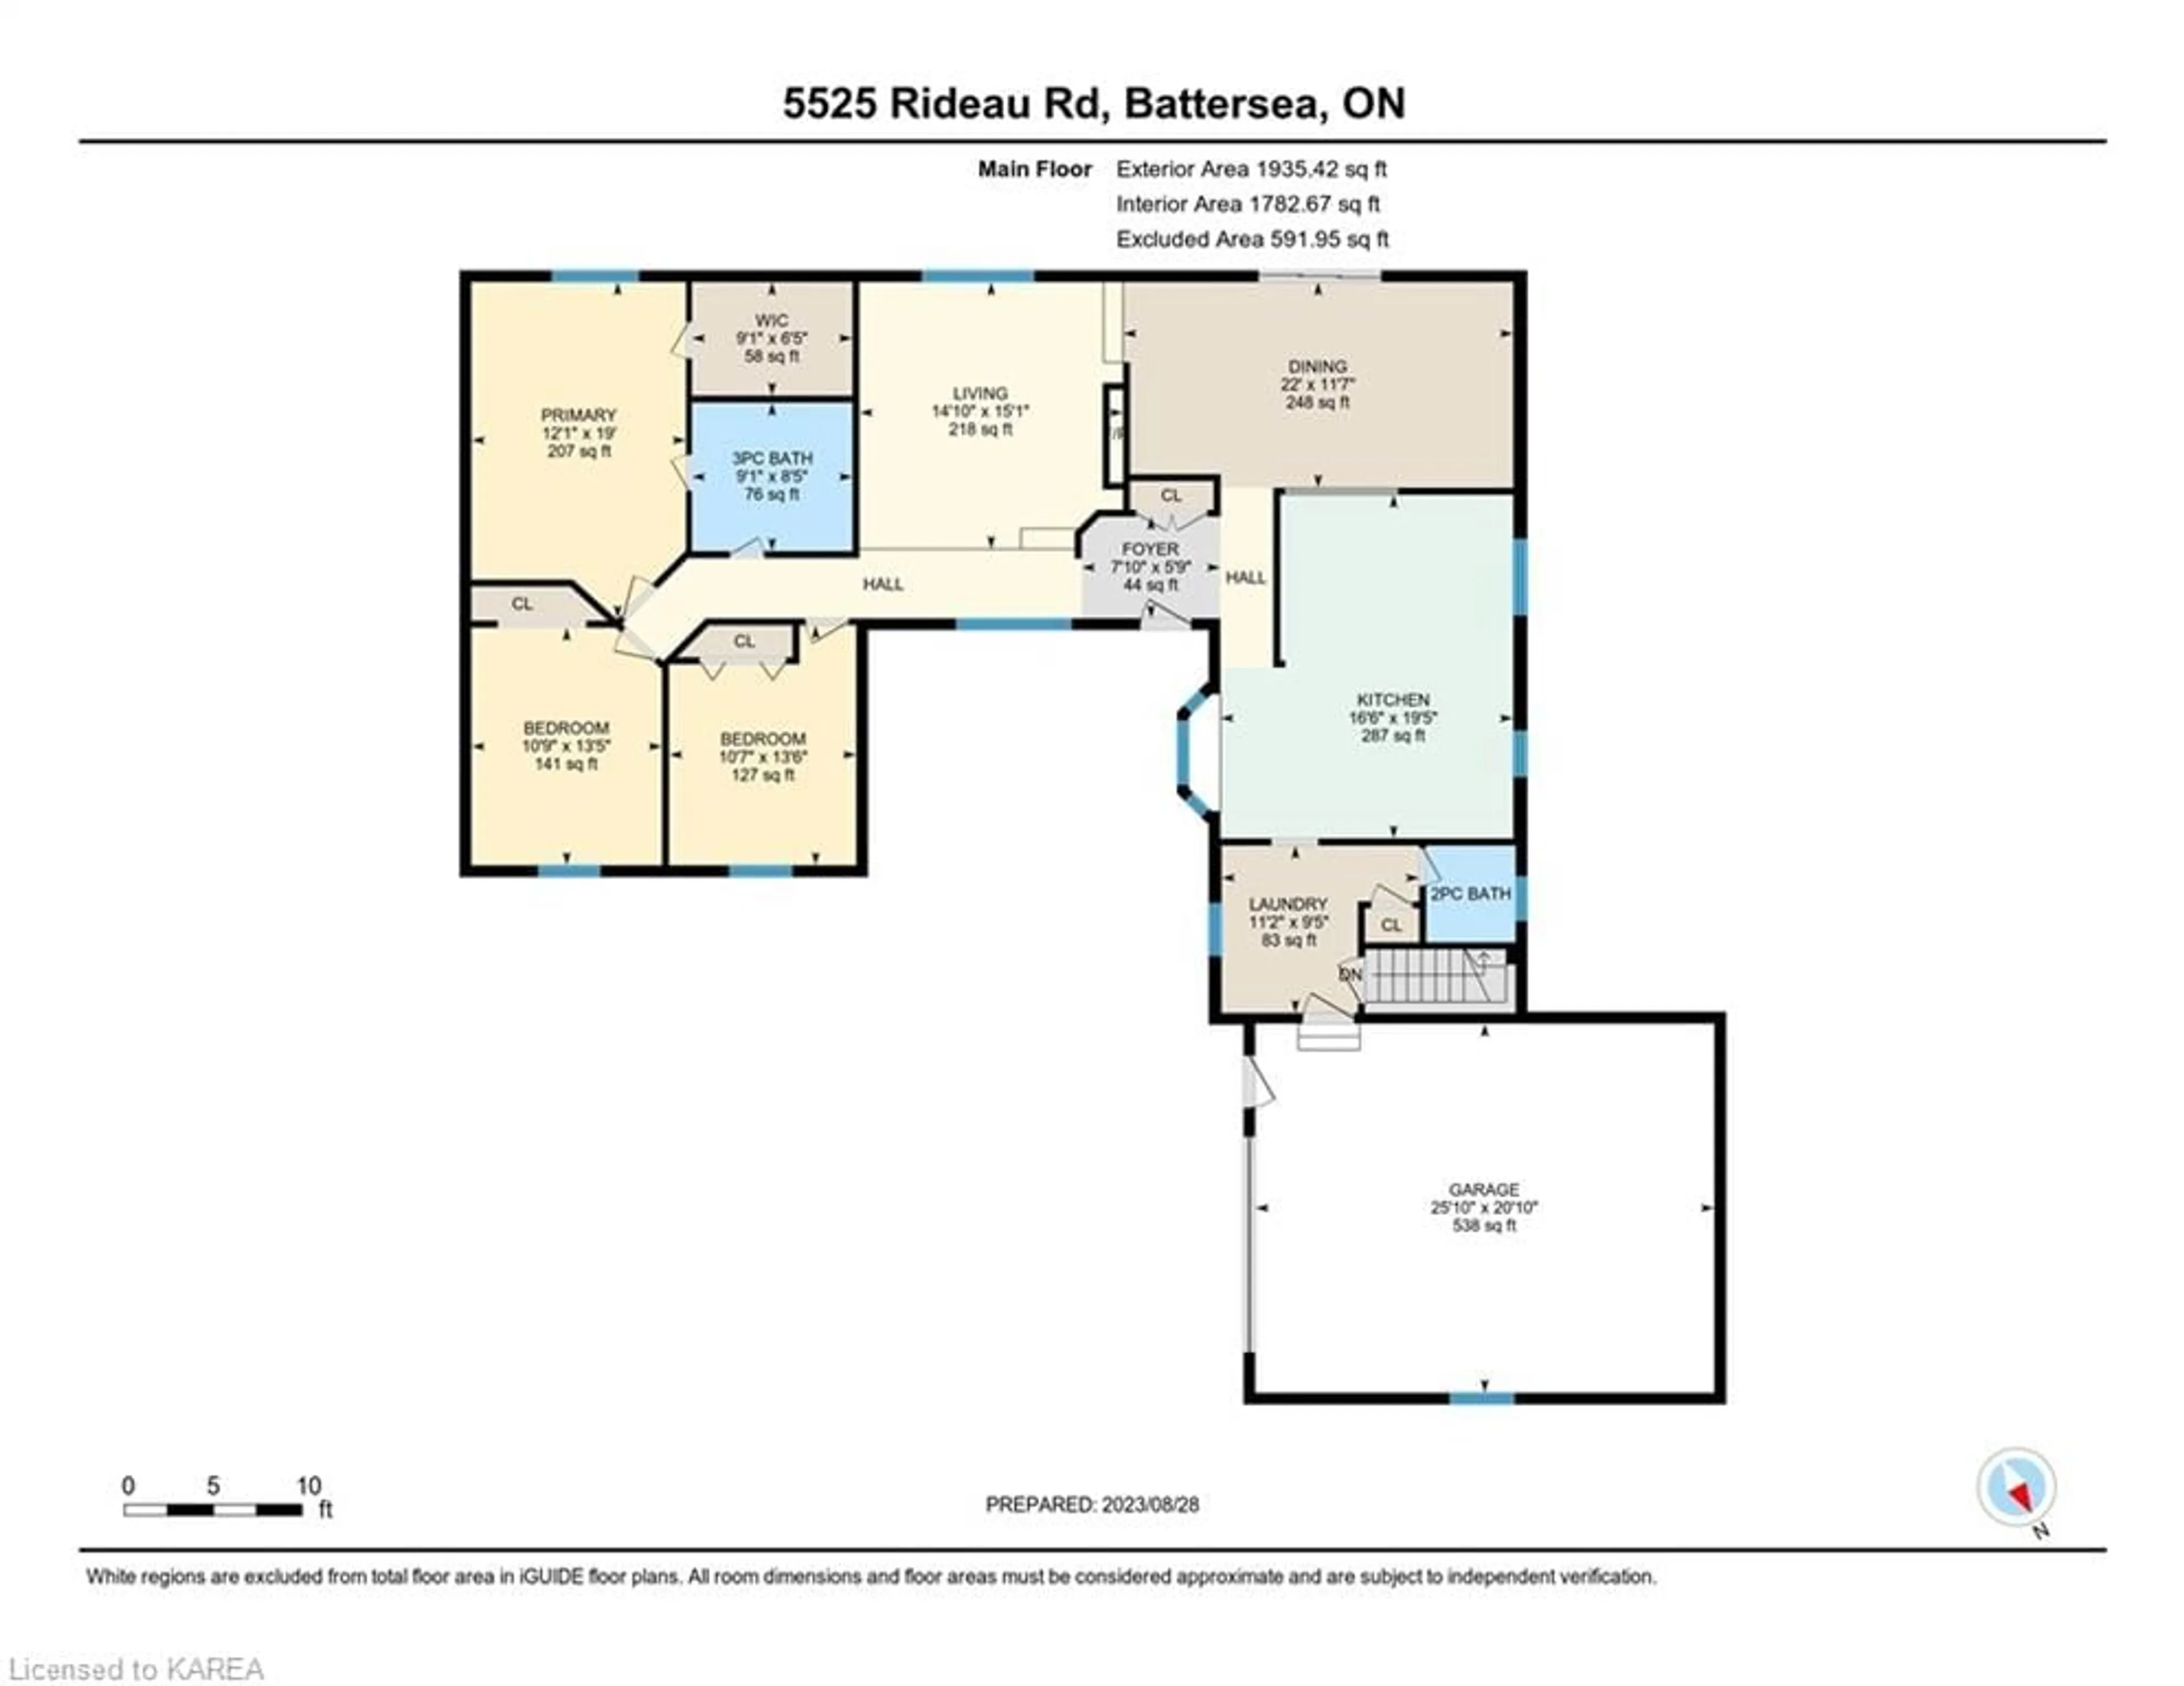 Floor plan for 5525 Rideau Rd, Seeleys Bay Ontario K0H 2N0